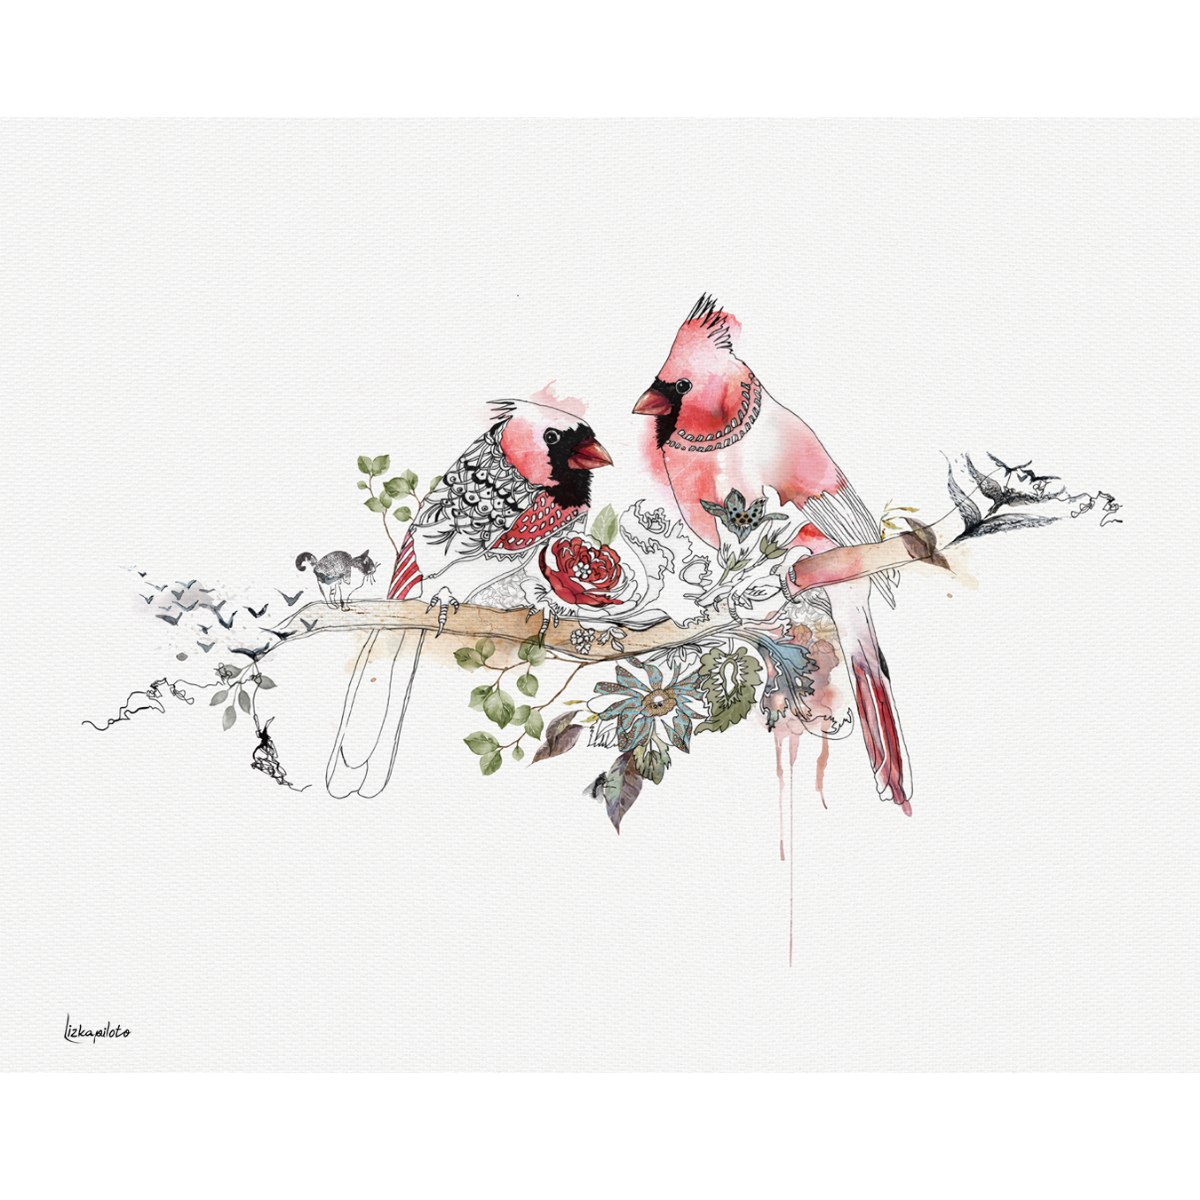 ציור של זוג ציפורים אדומות